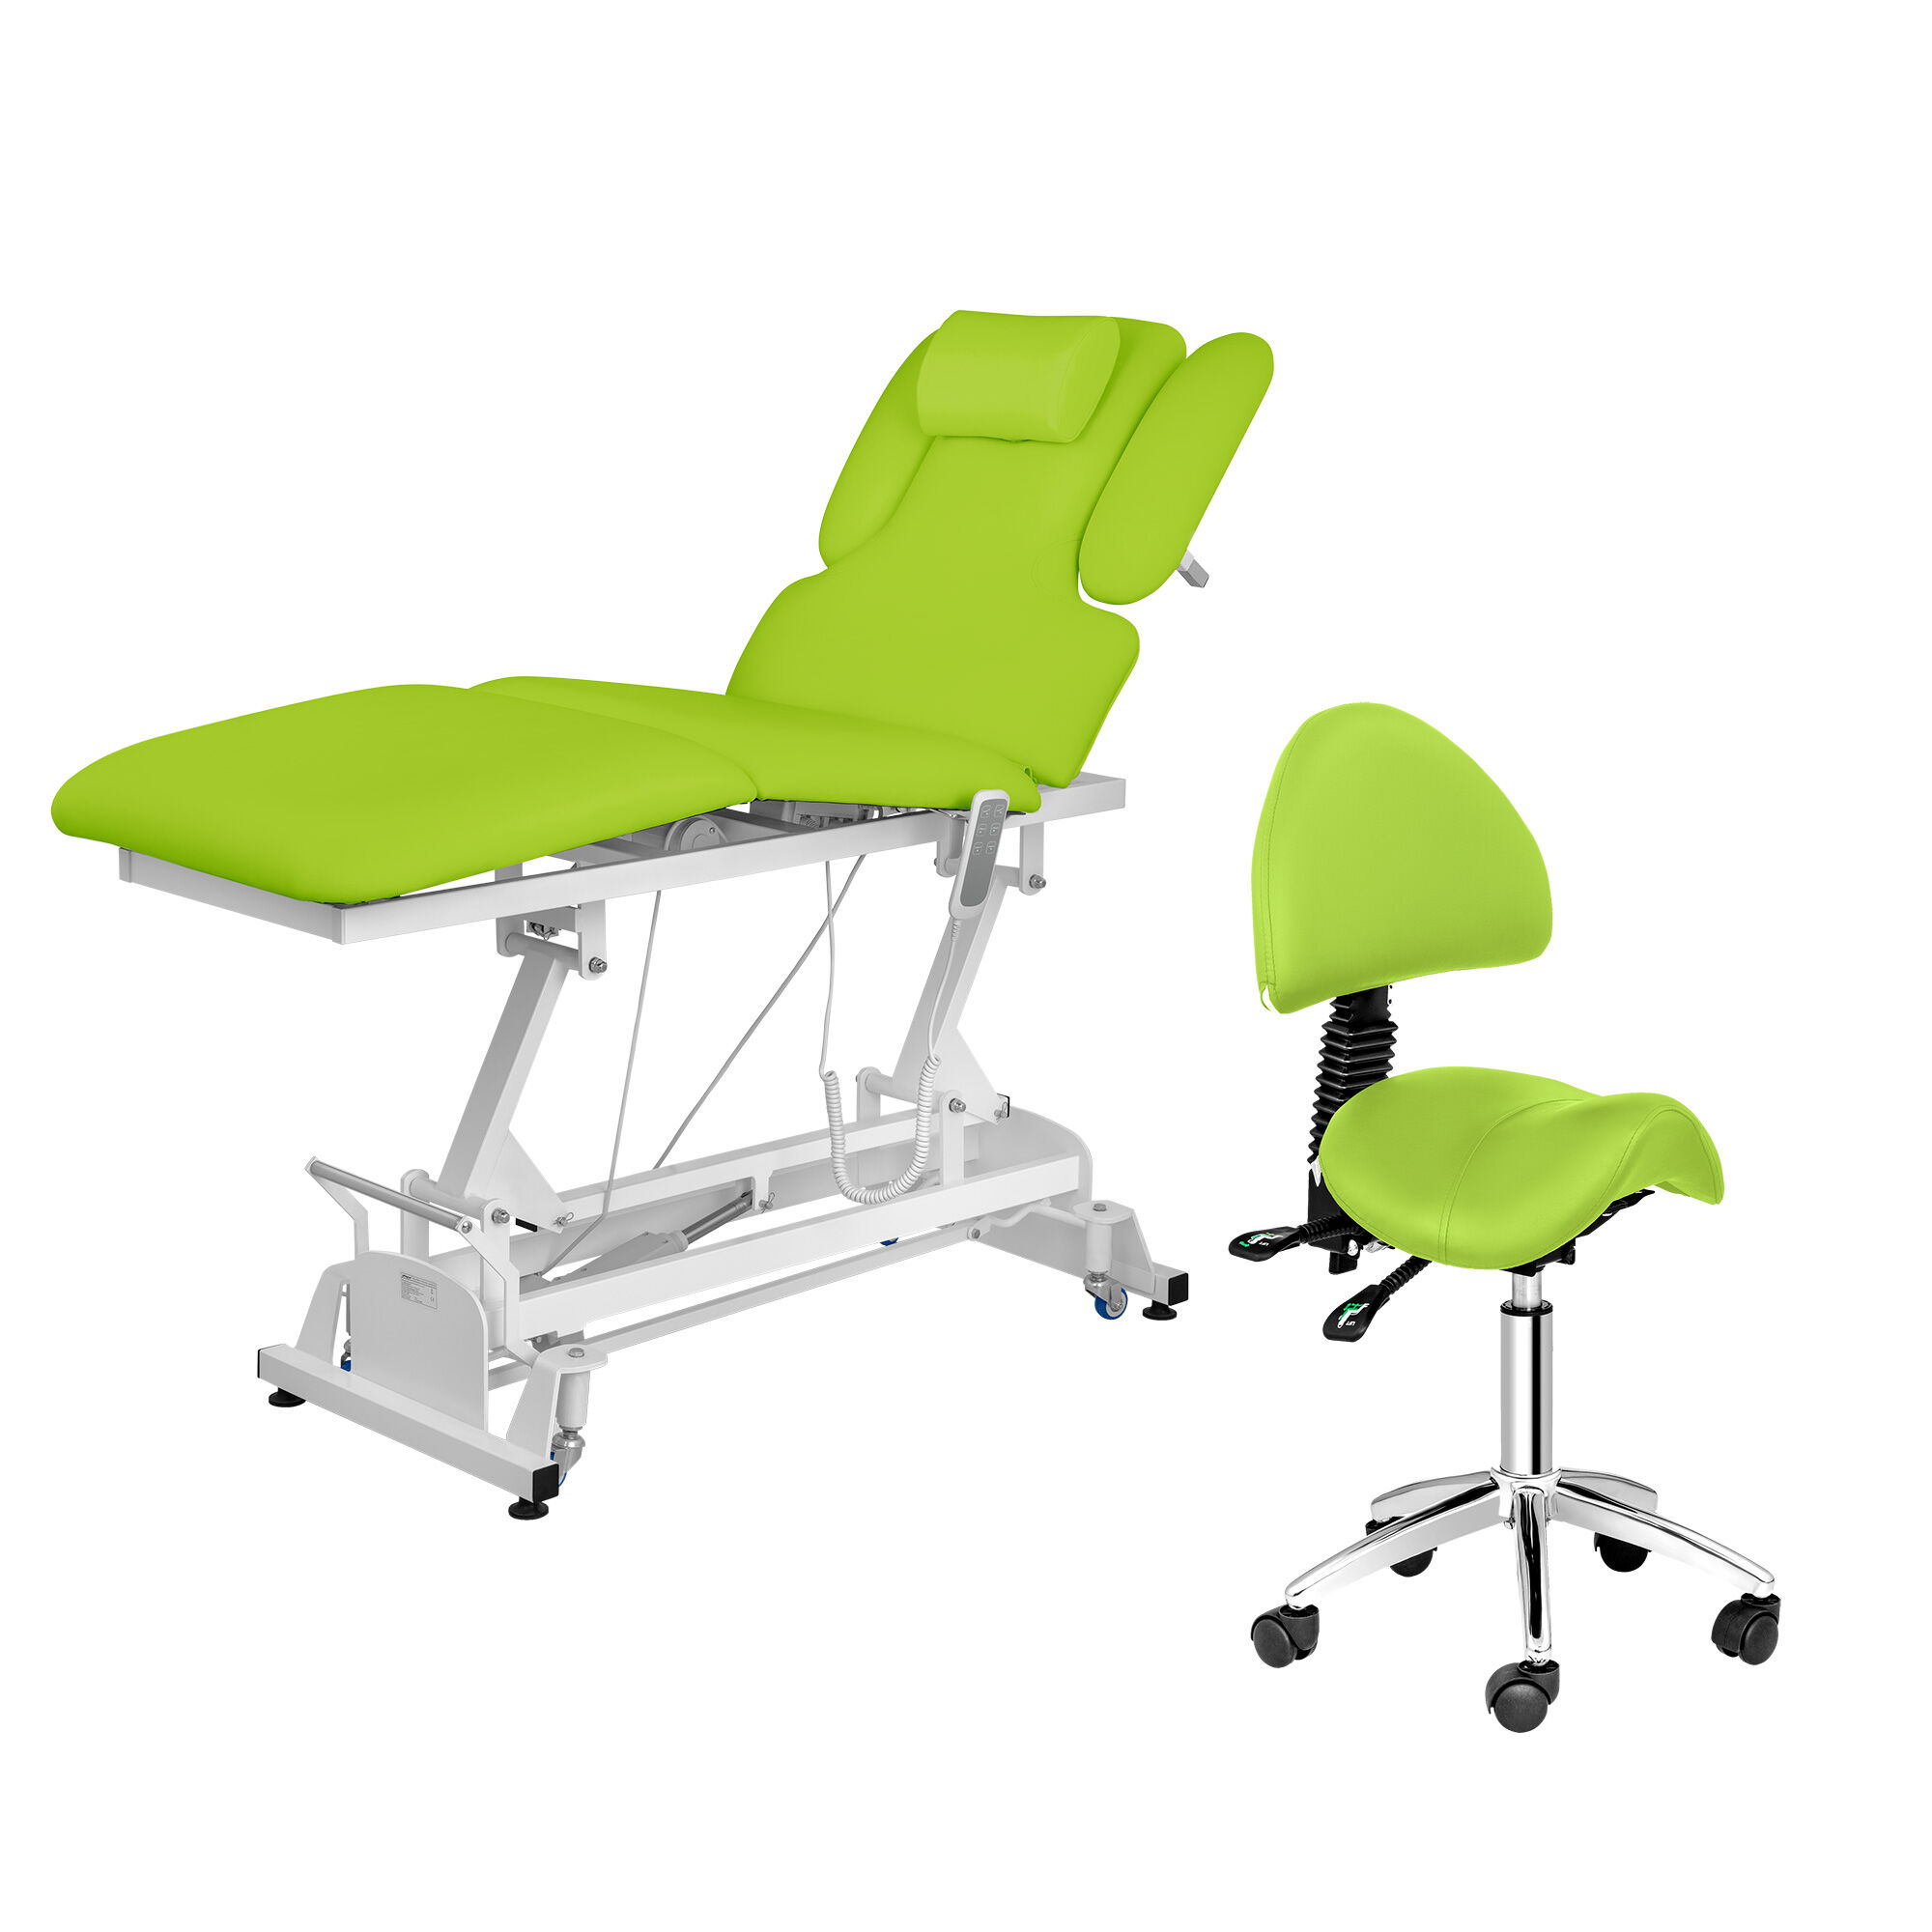 physa Zestaw Łóżko do masażu Physa Nantes Light Green + Krzesło siodłowe Berlin z oparciem - jasnozielone PHYSA NANTES LIGHT GREEN SET